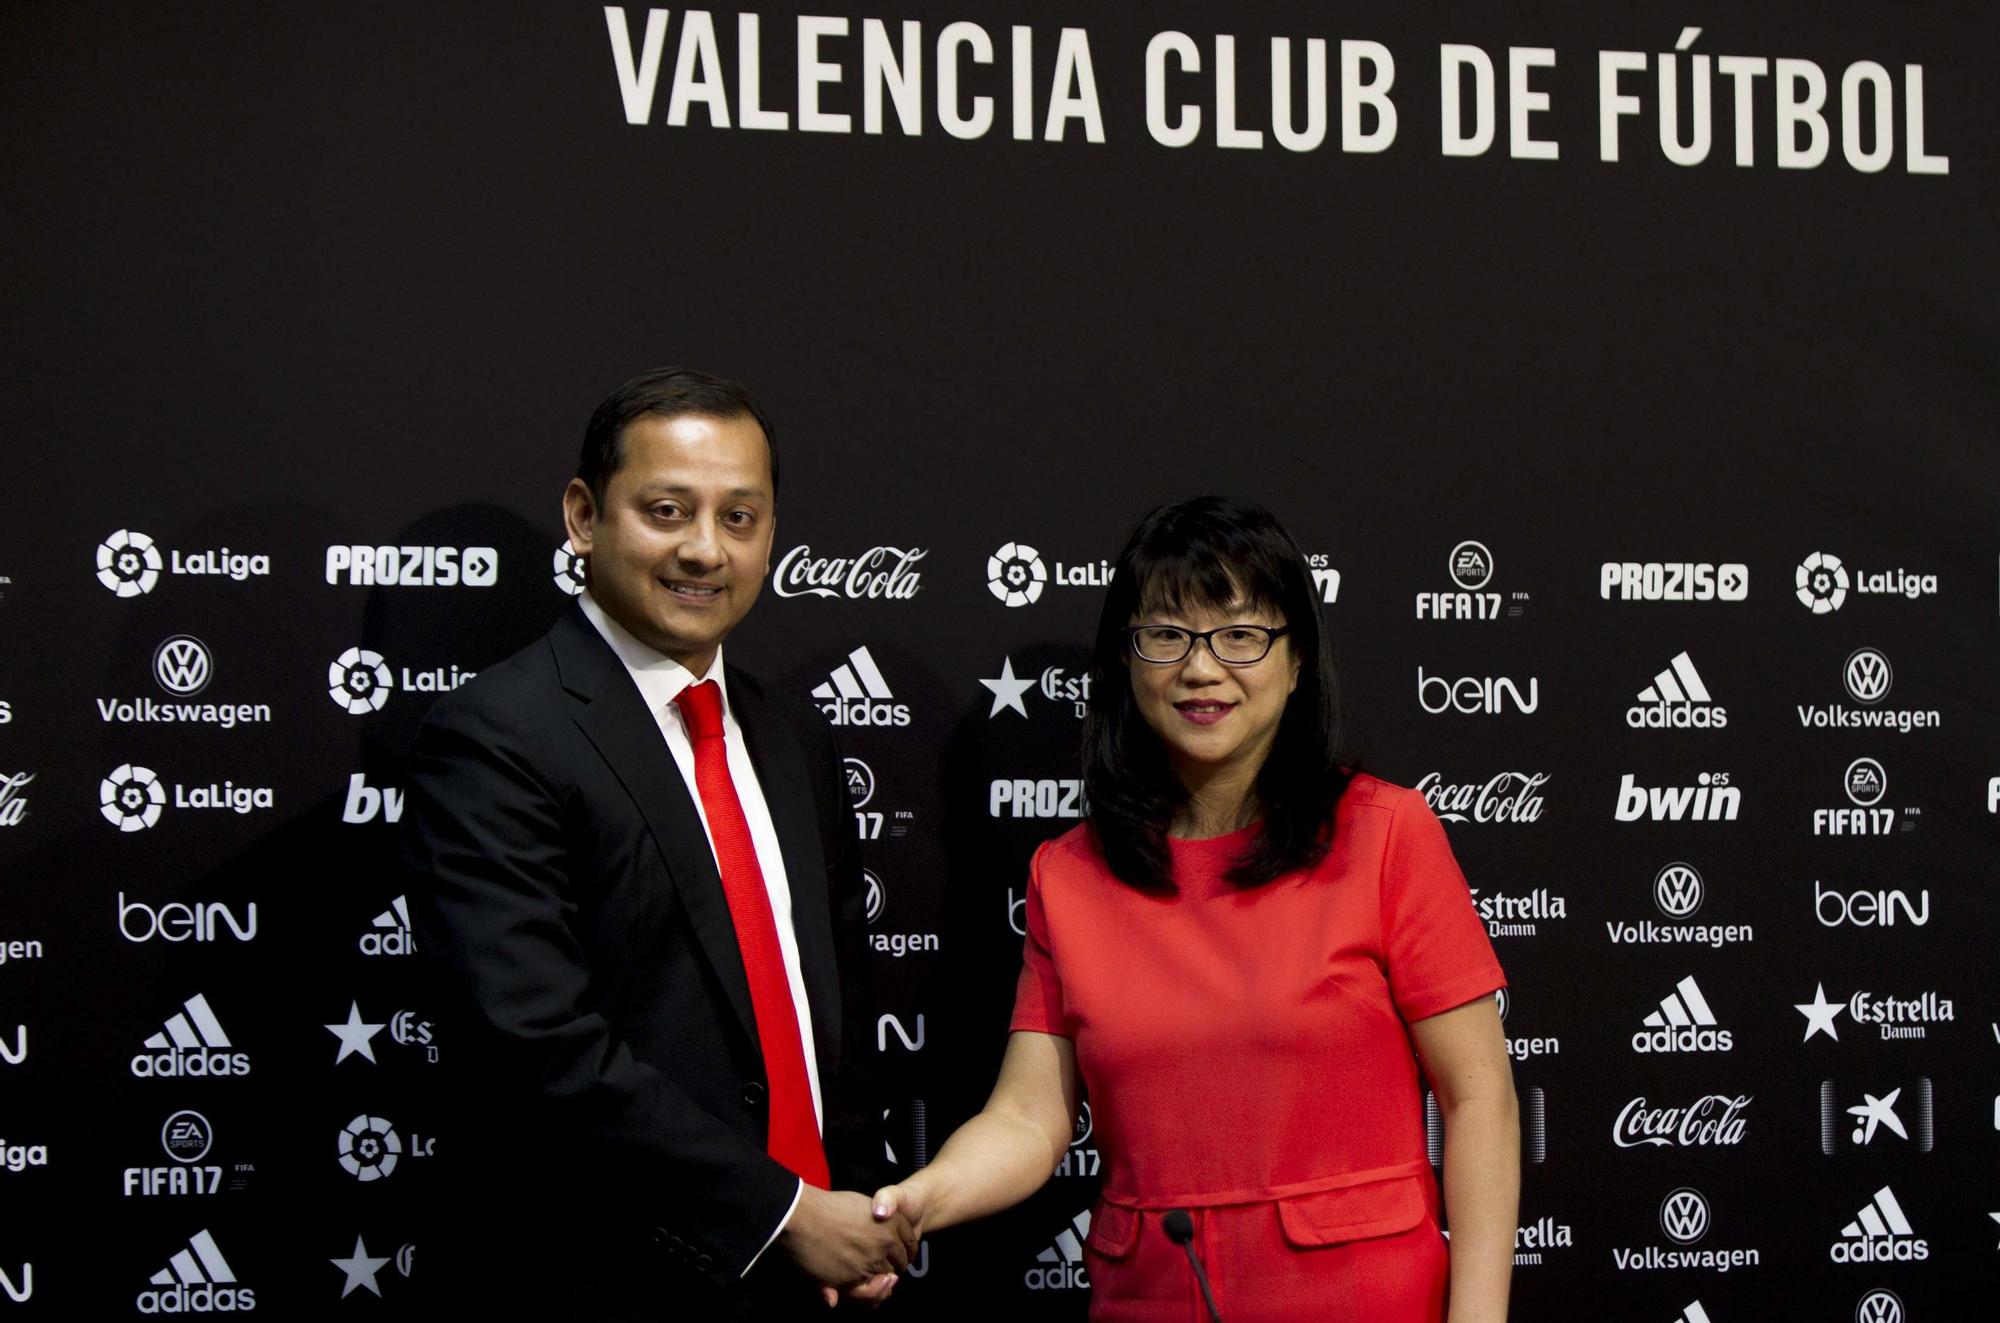 Album de fotos de Anil Murthy en la presidencia del Valencia CF